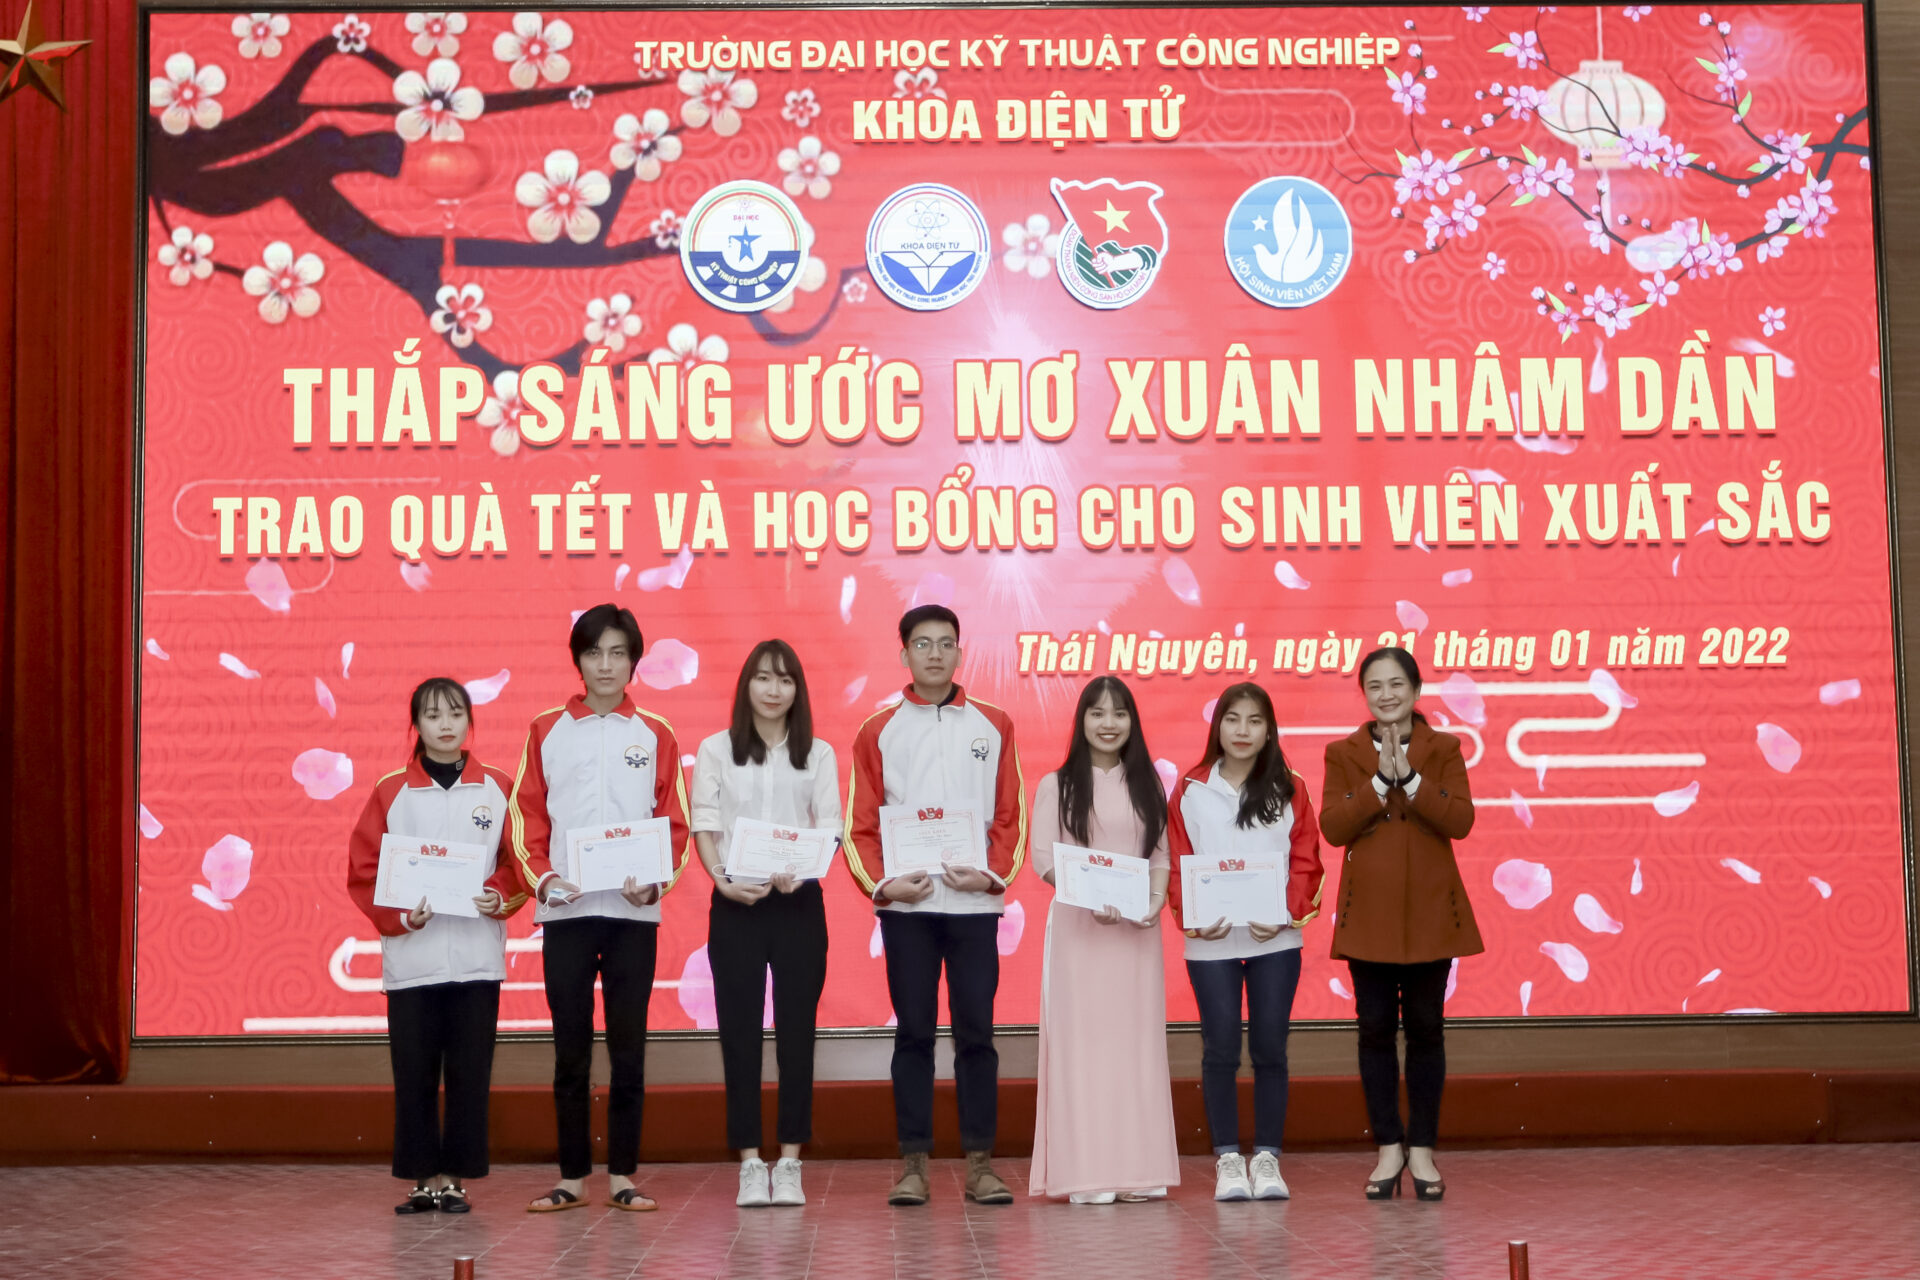 Cô Đoàn Thanh Hải, phó trưởng Khoa Điện tử trao các Giấy khen cho các sinh viên xuất sắc trong chương trình.